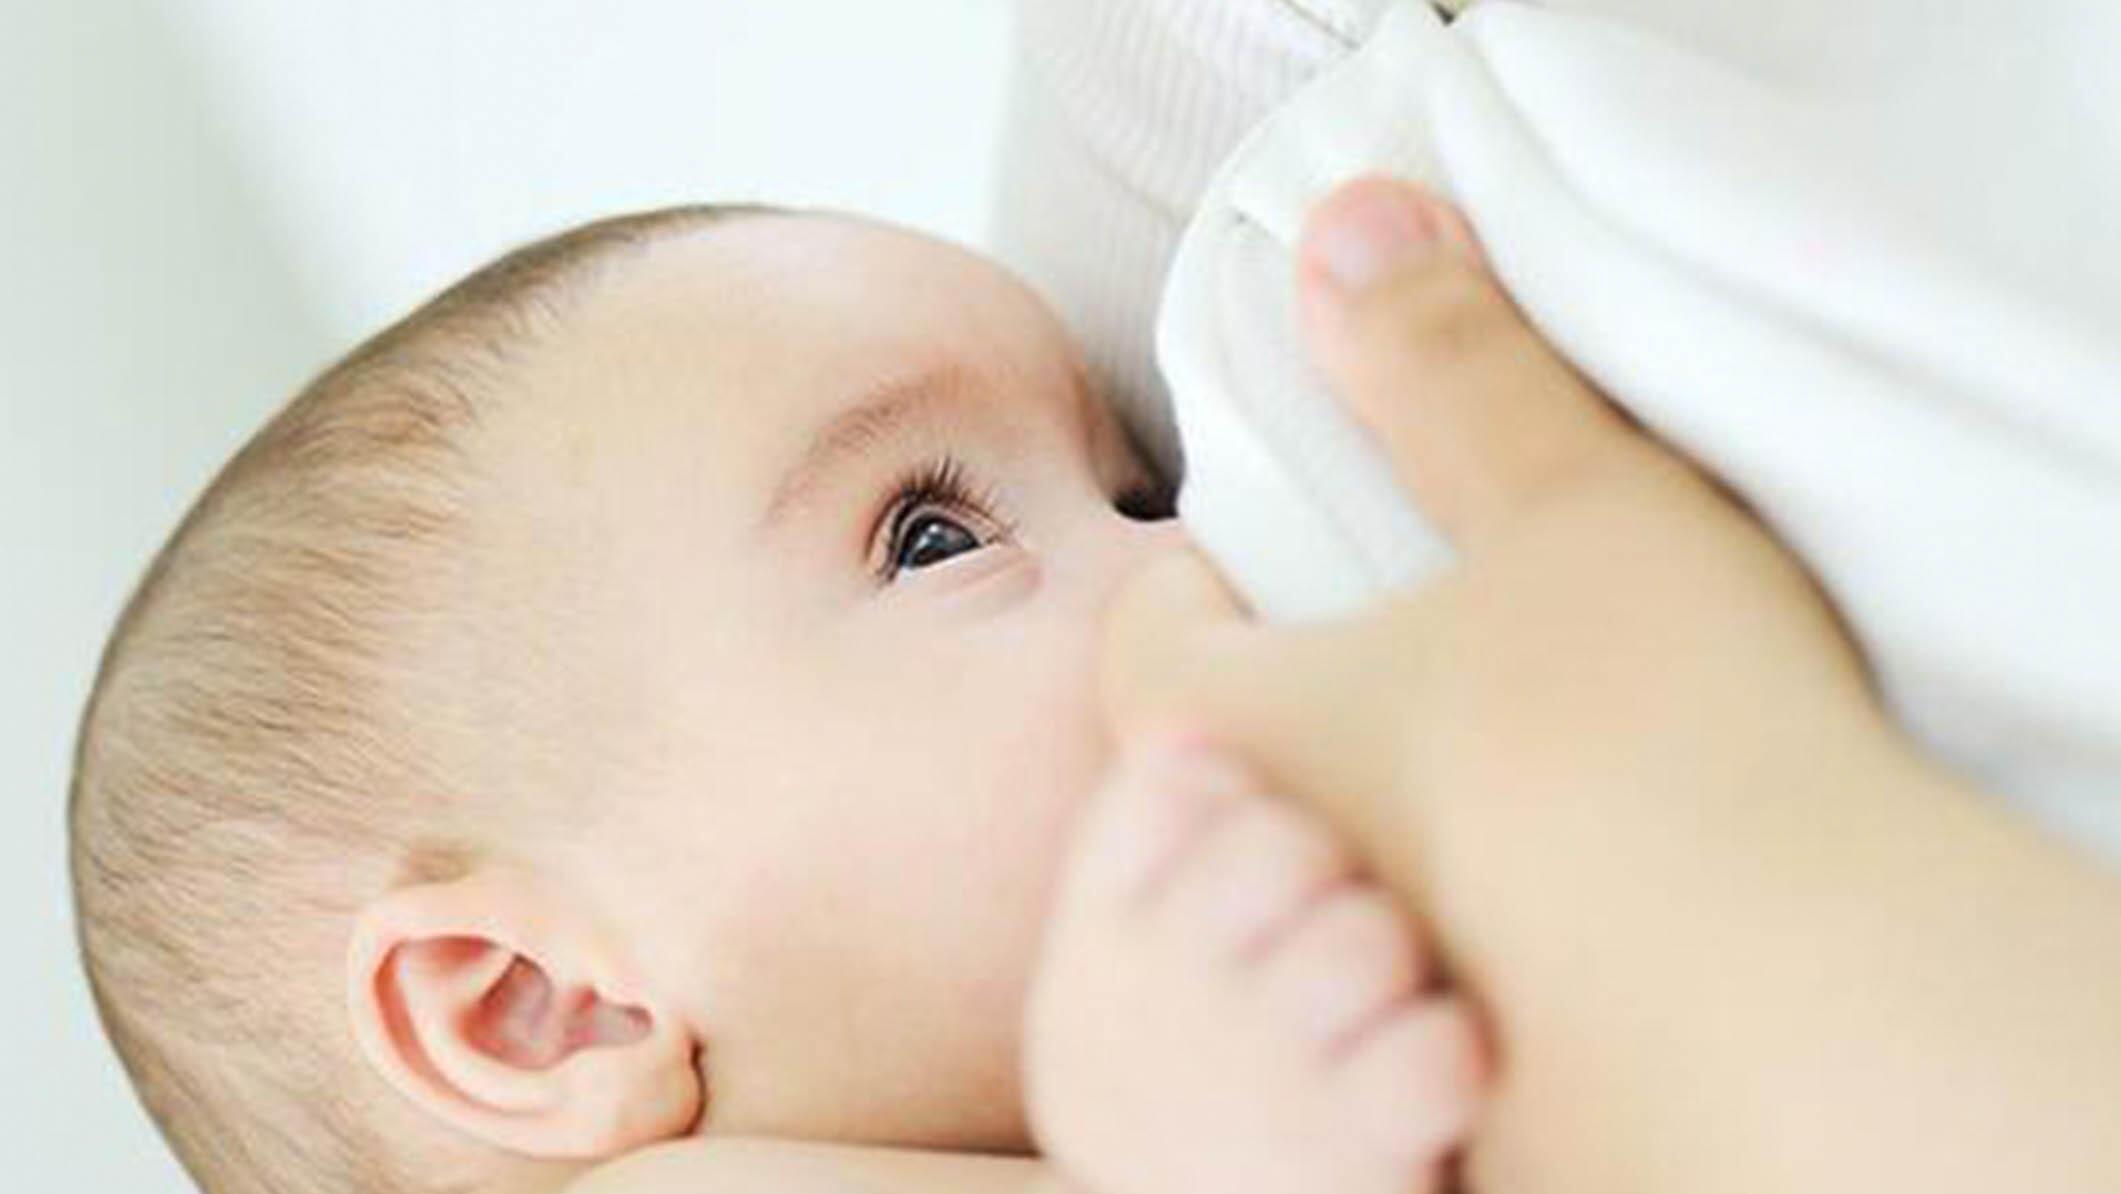 Anne sütü alan bebeklerin kalbi daha sağlıklı